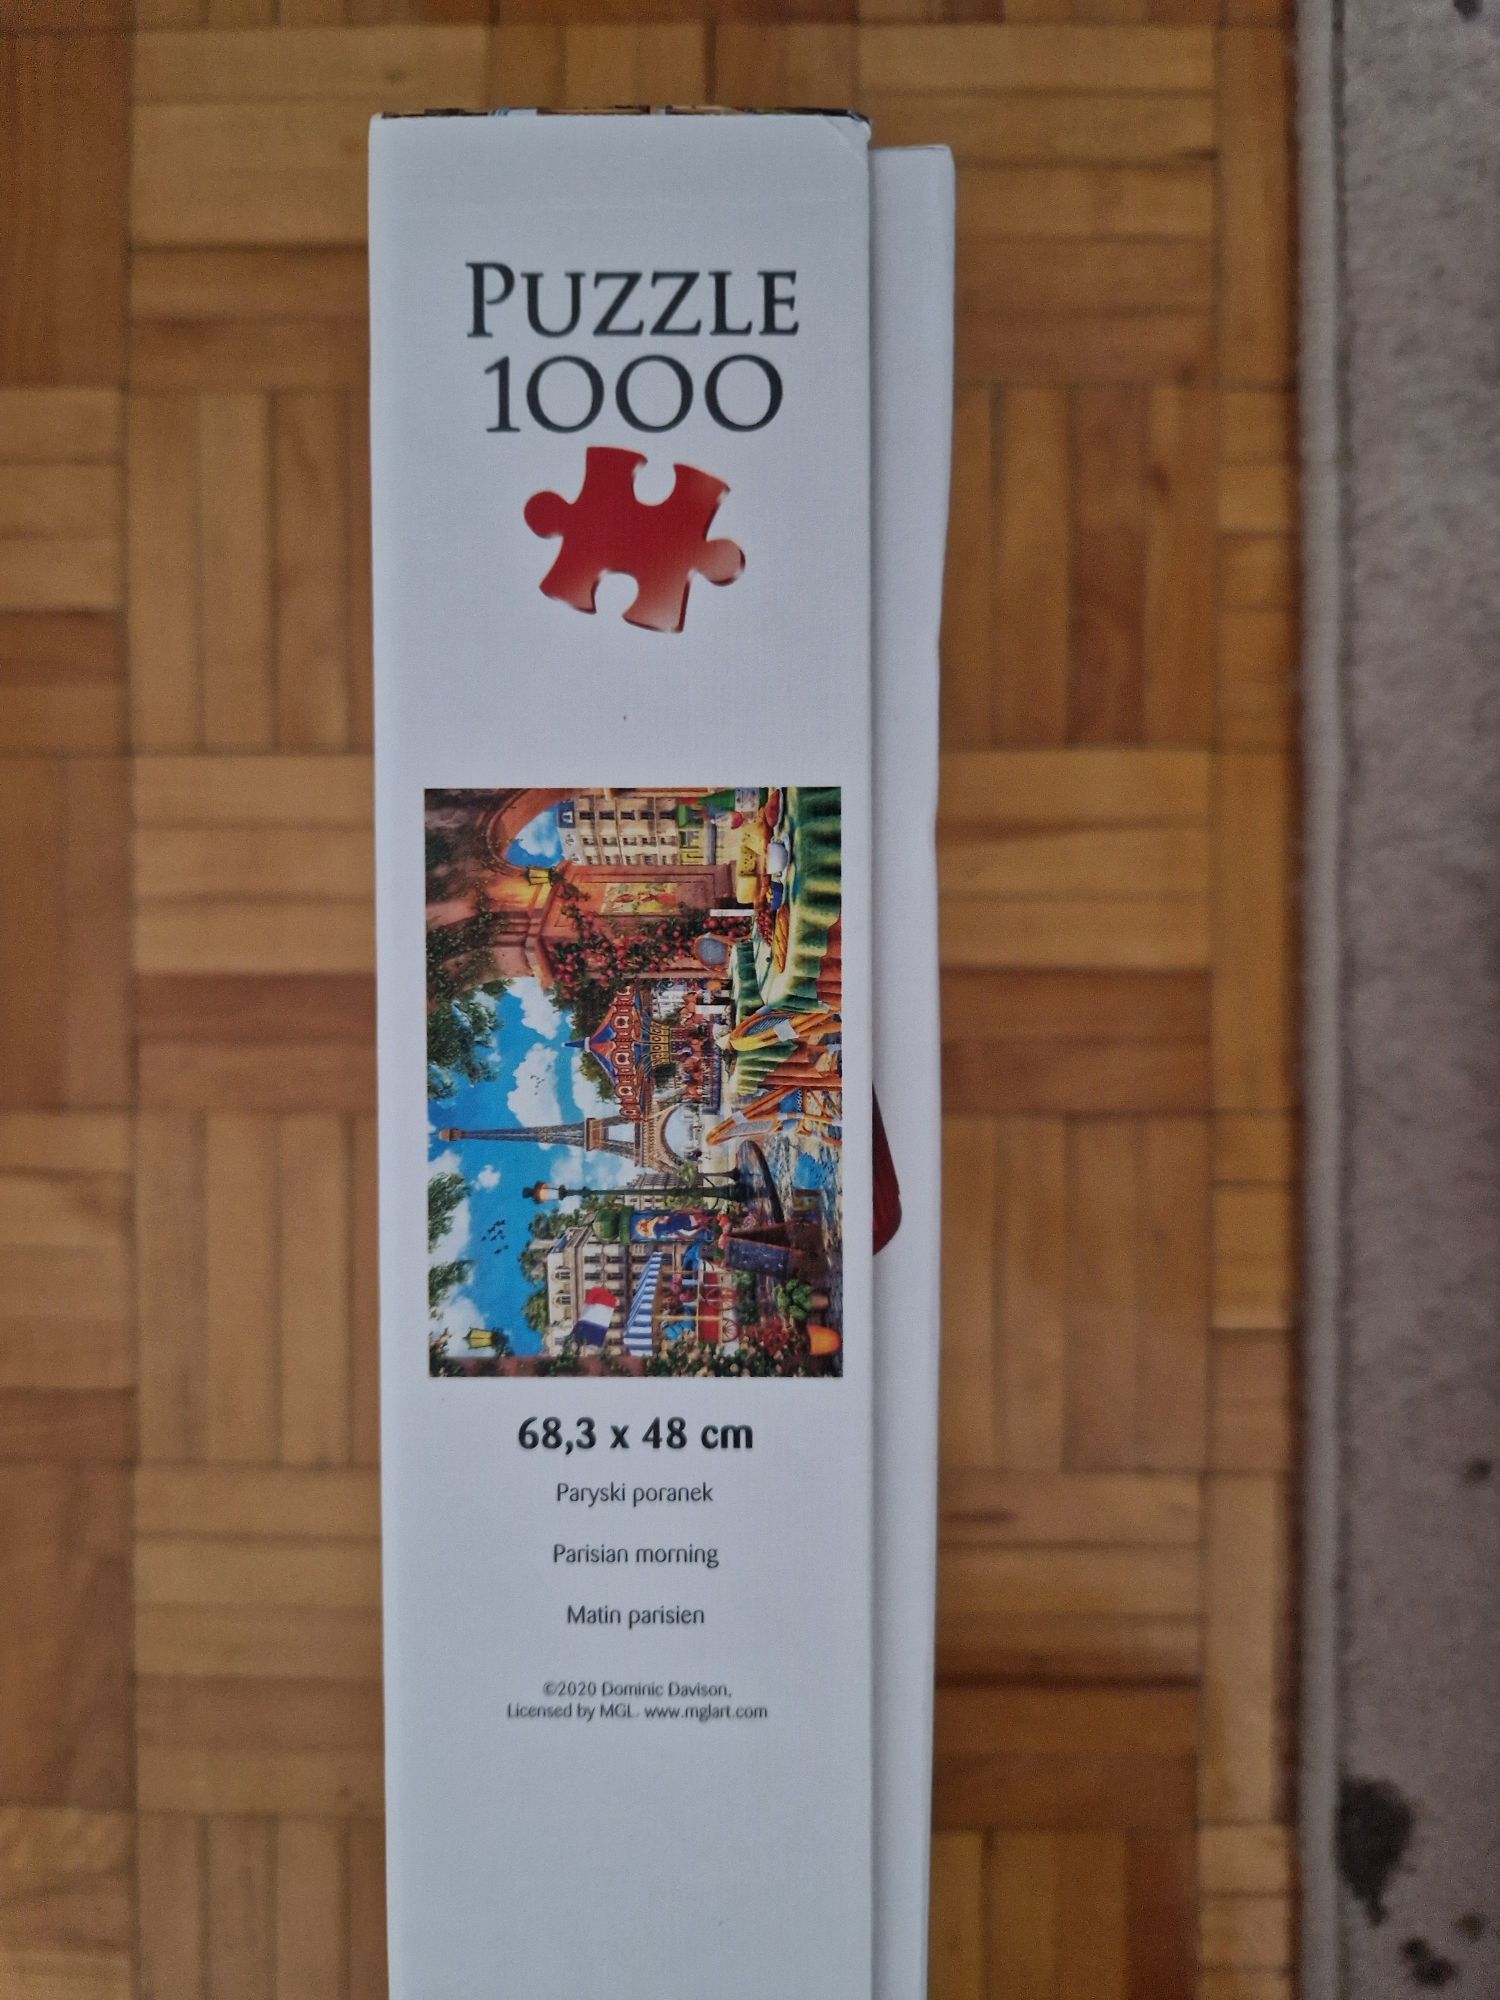 Puzzle Premium quality Dominic Dawidson 1000